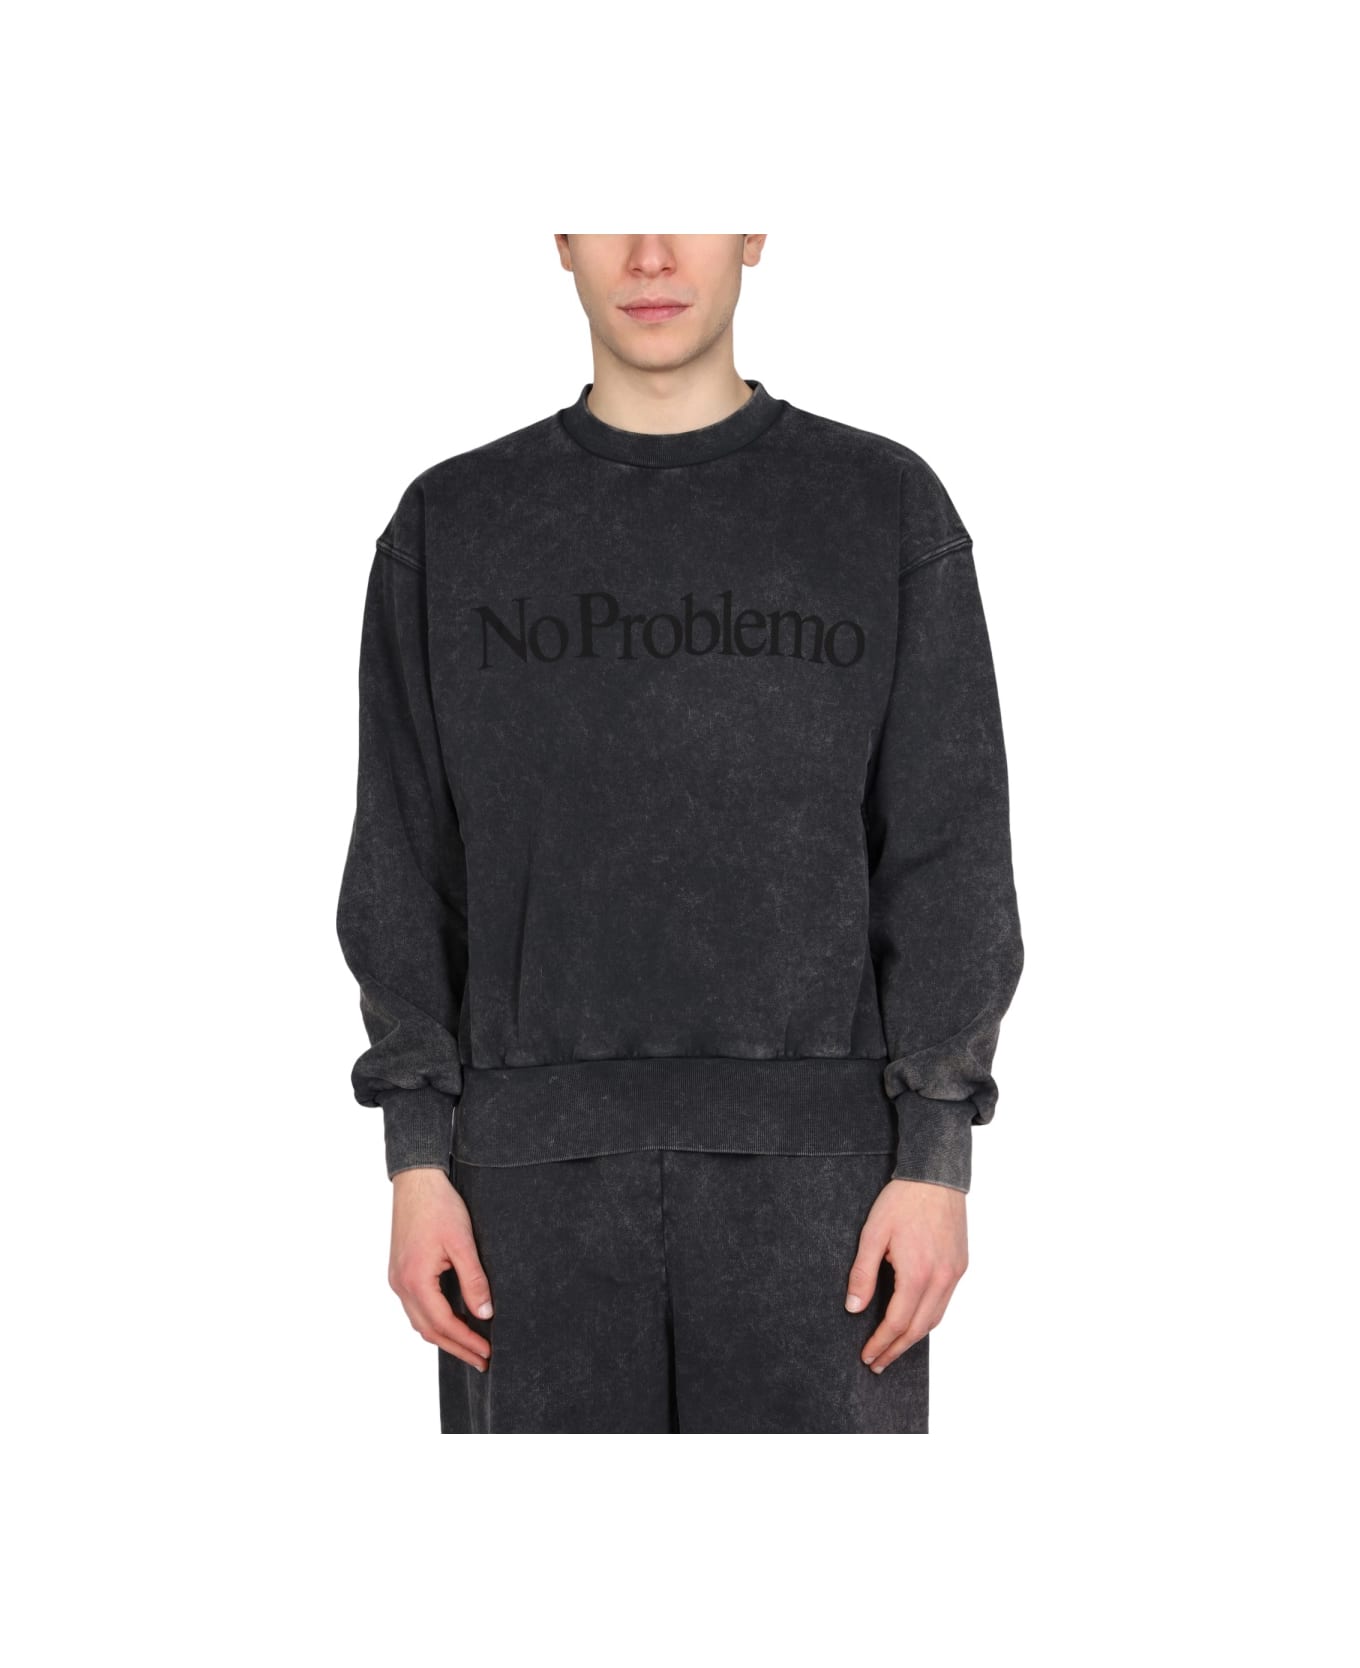 Aries "no Problemo" Print Sweatshirt - BLACK フリース